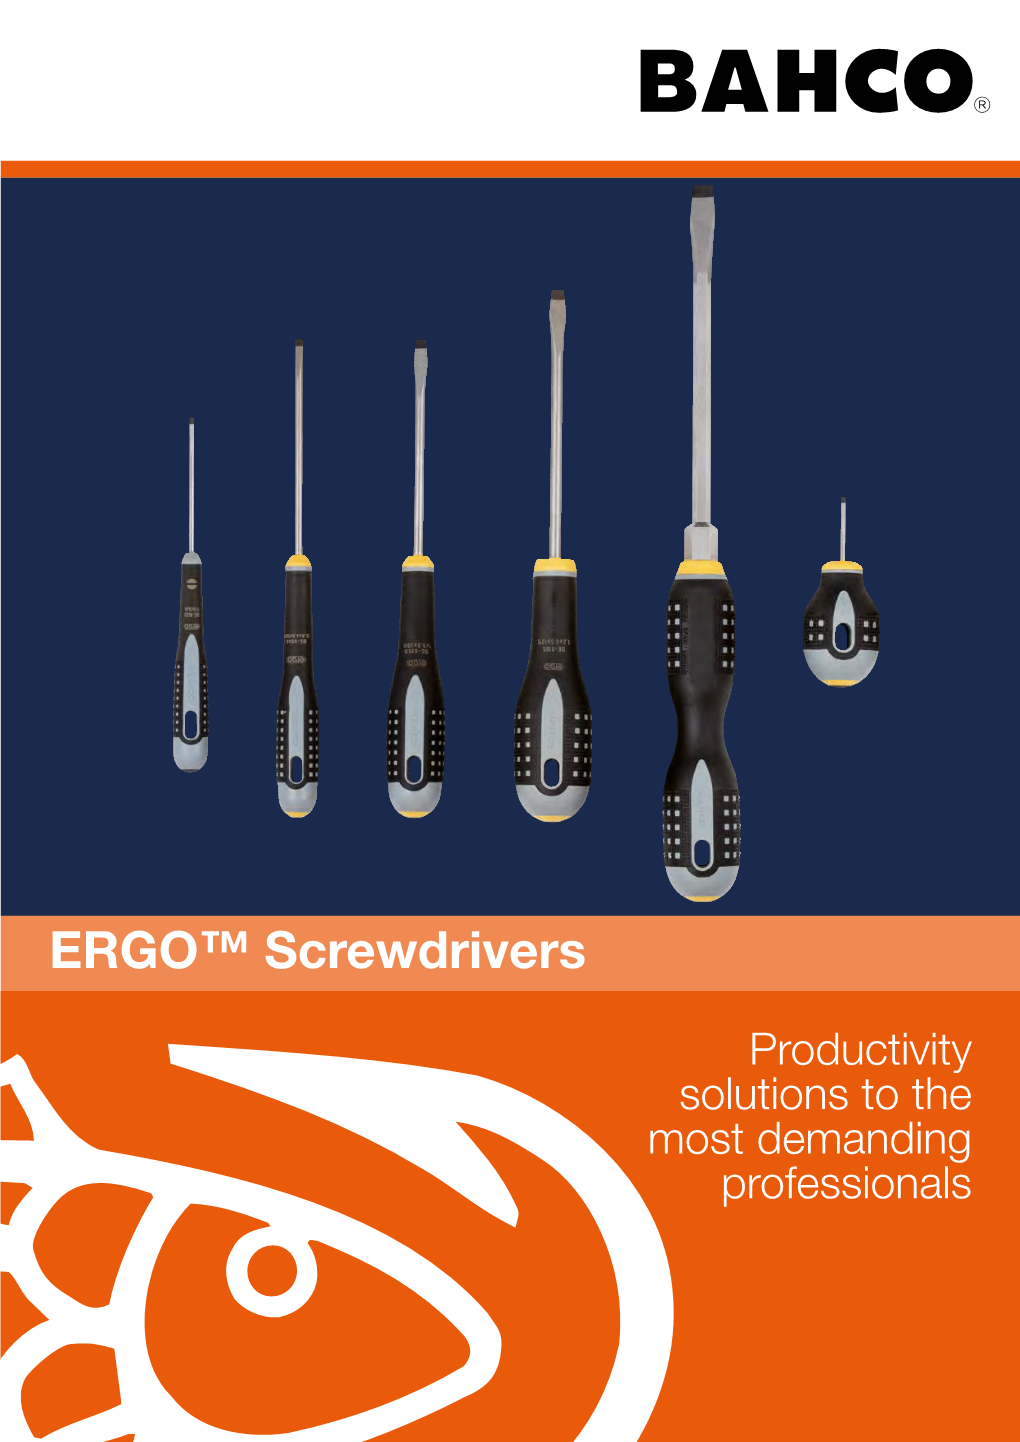 ERGO™ Screwdrivers